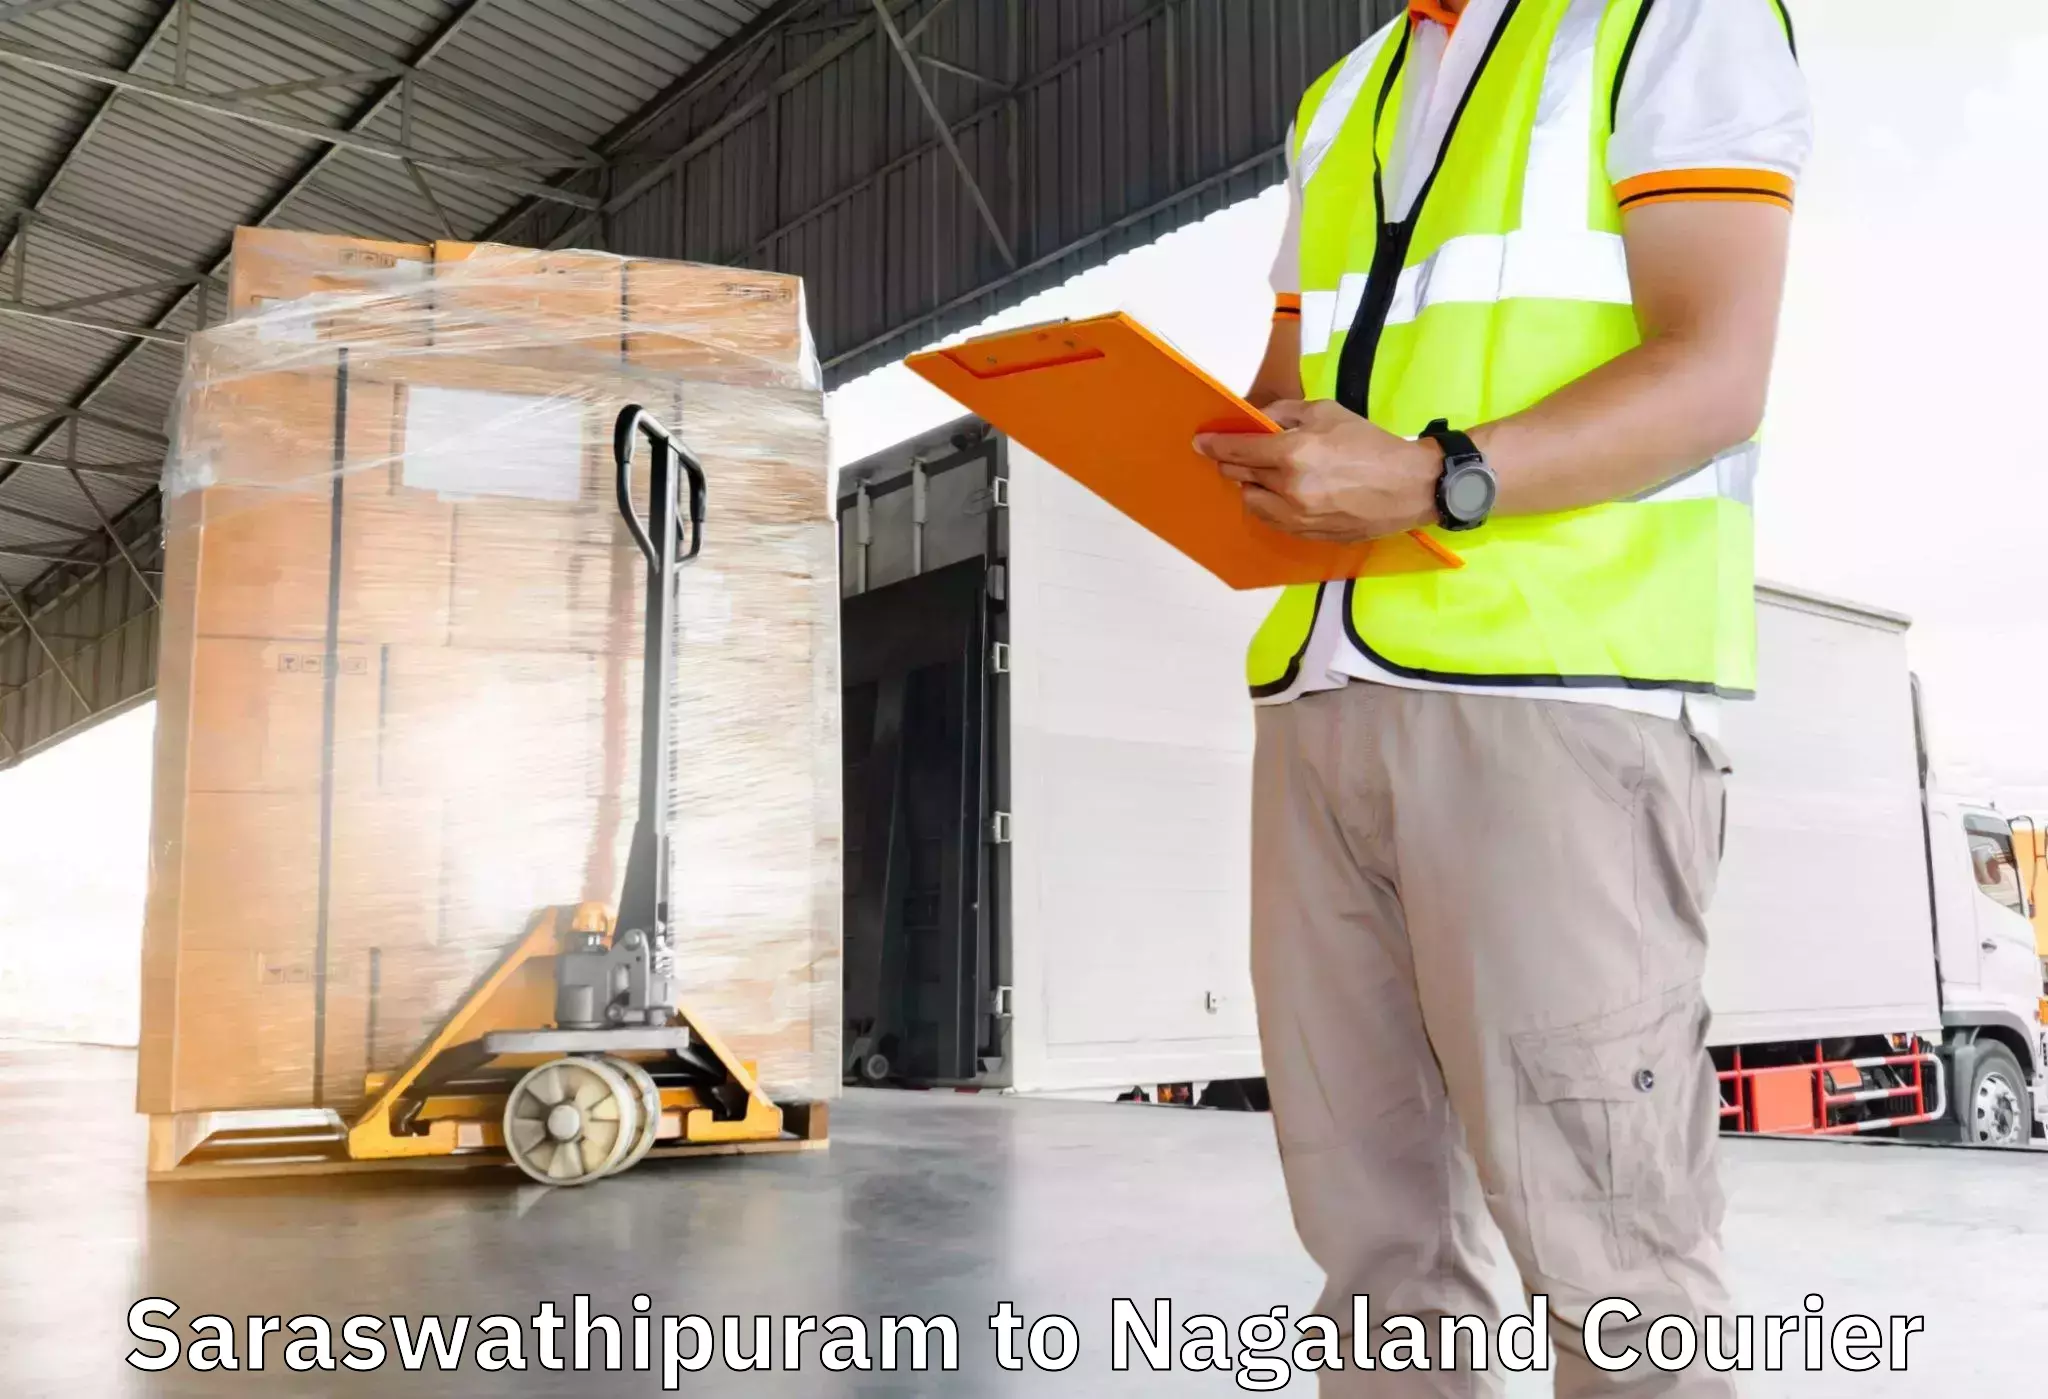 Home goods moving company Saraswathipuram to Wokha